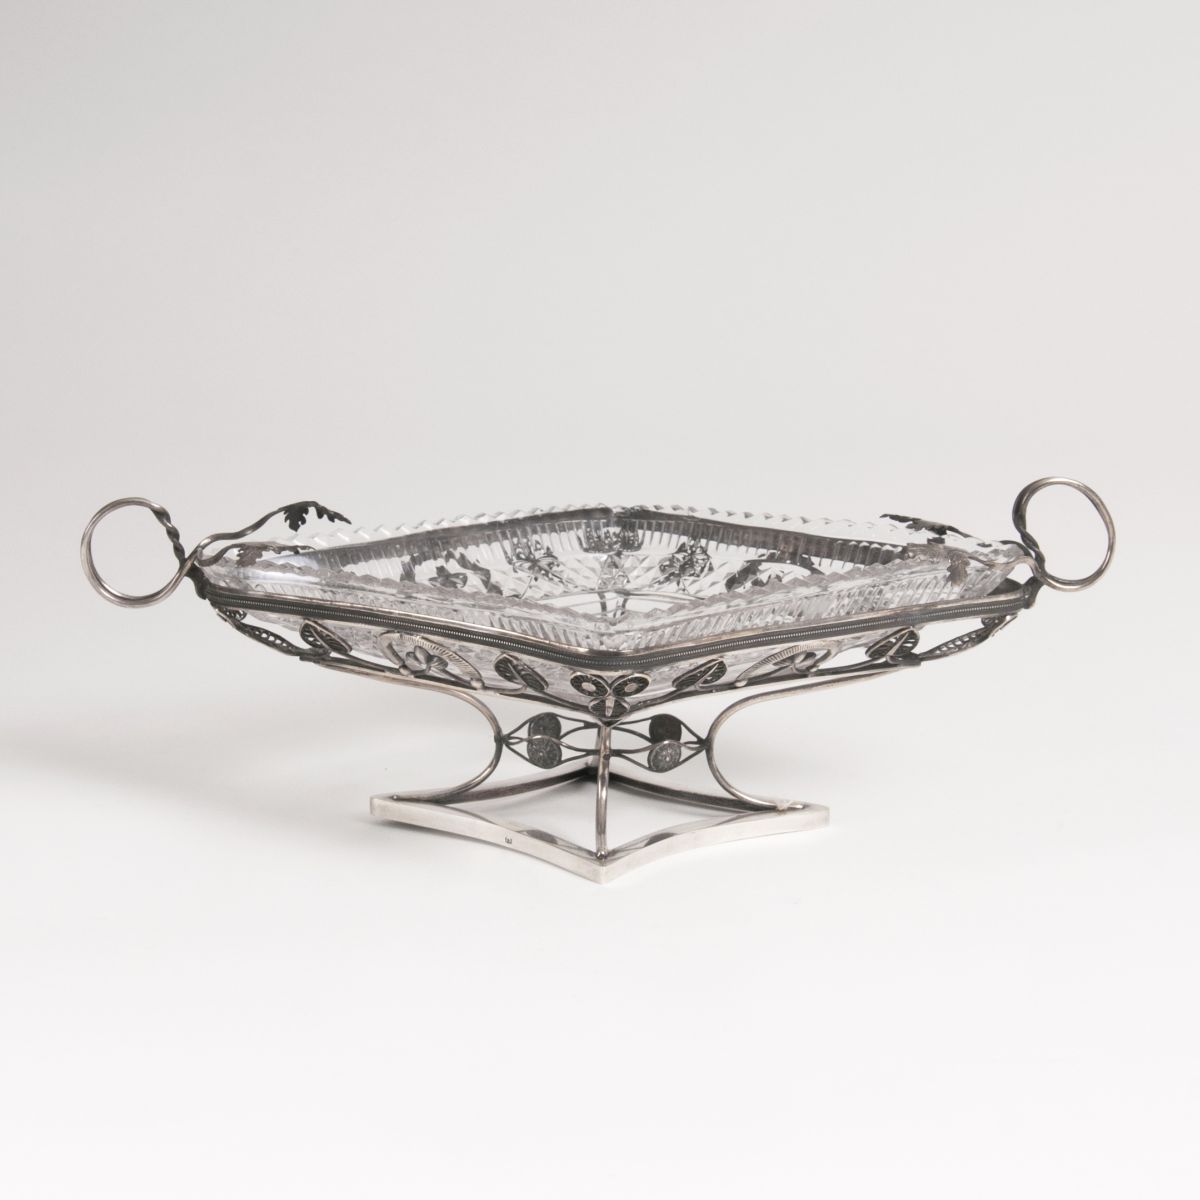 A Biedermeier bowl with glass insert